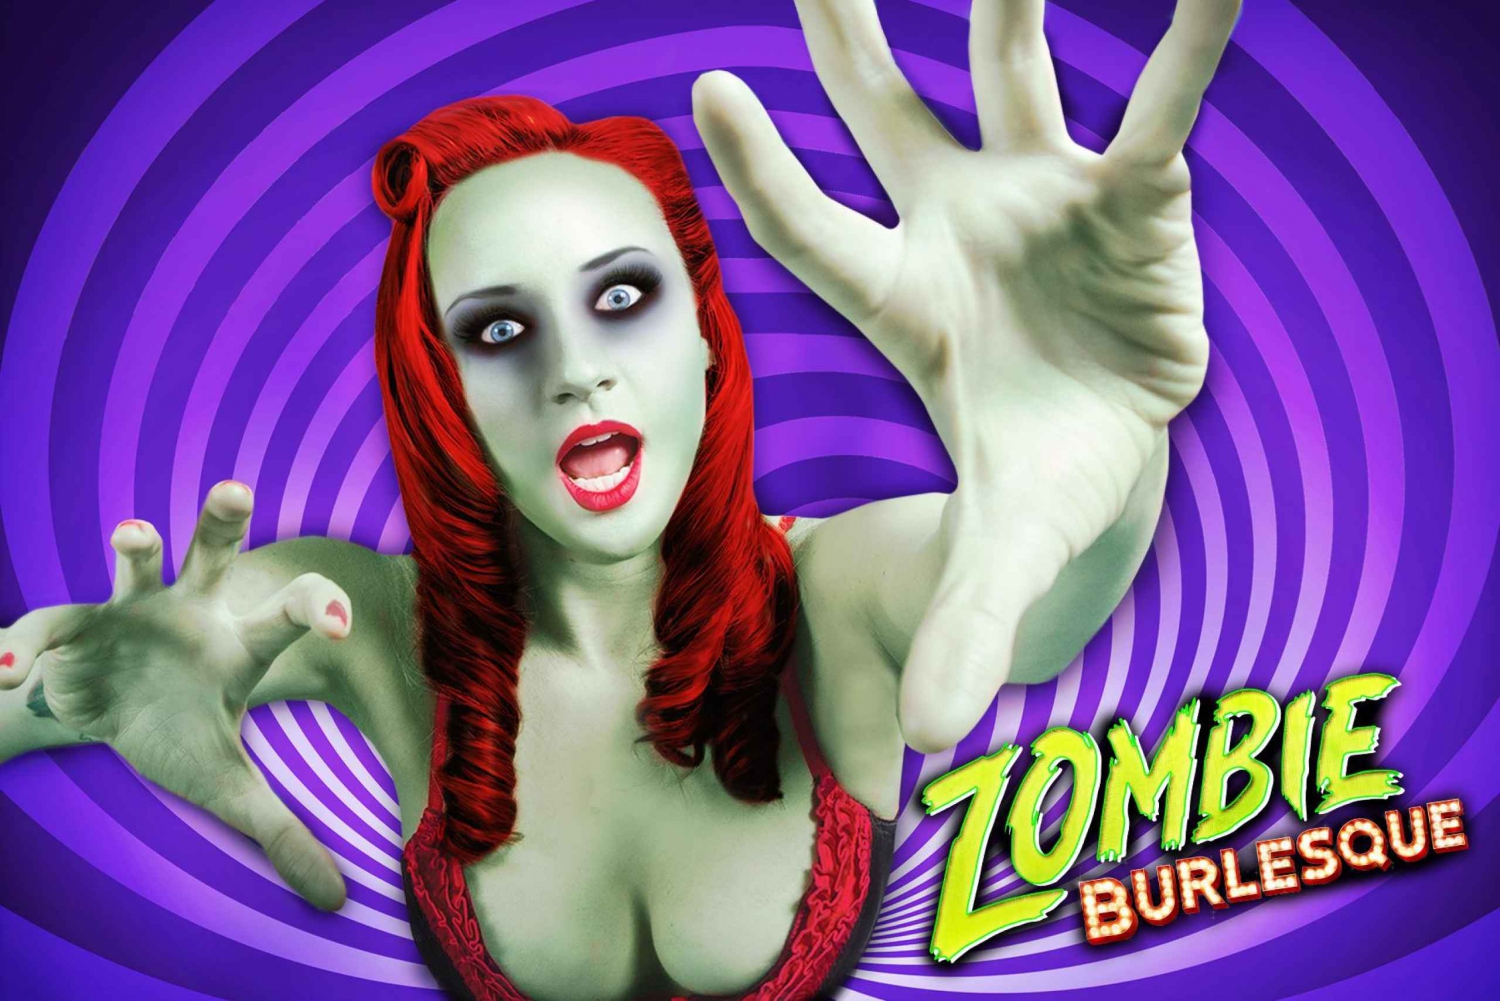 Las Vegas: Biglietto per lo spettacolo musicale comico Zombie Burlesque